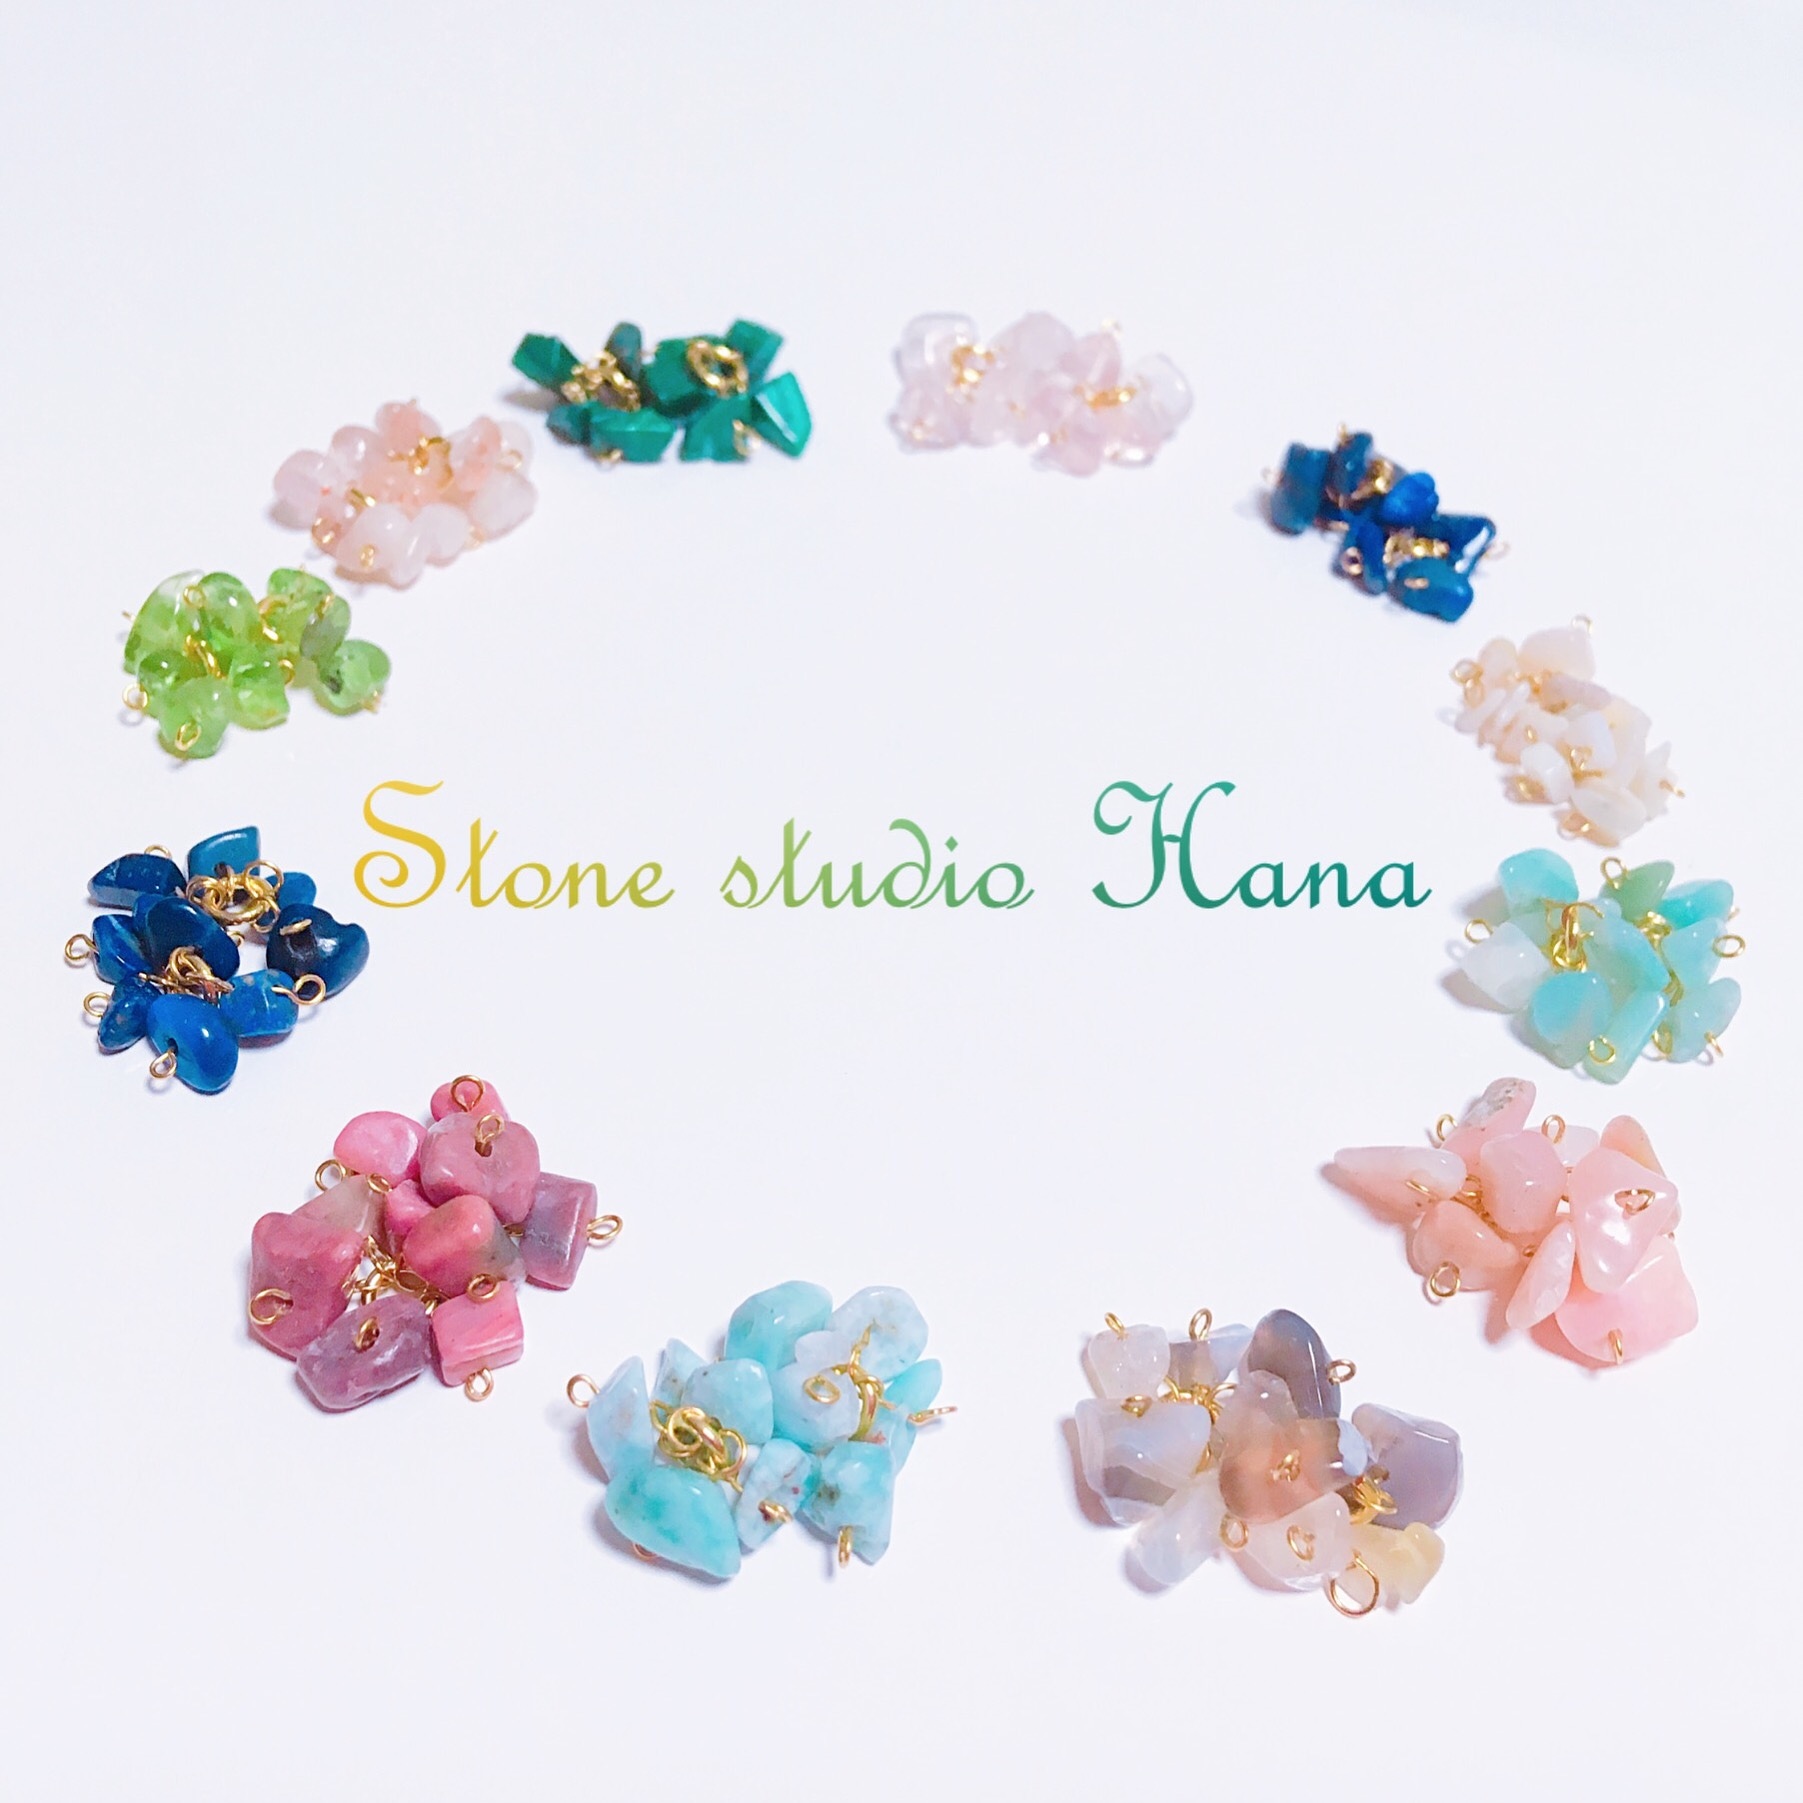 Stone studio  Hana